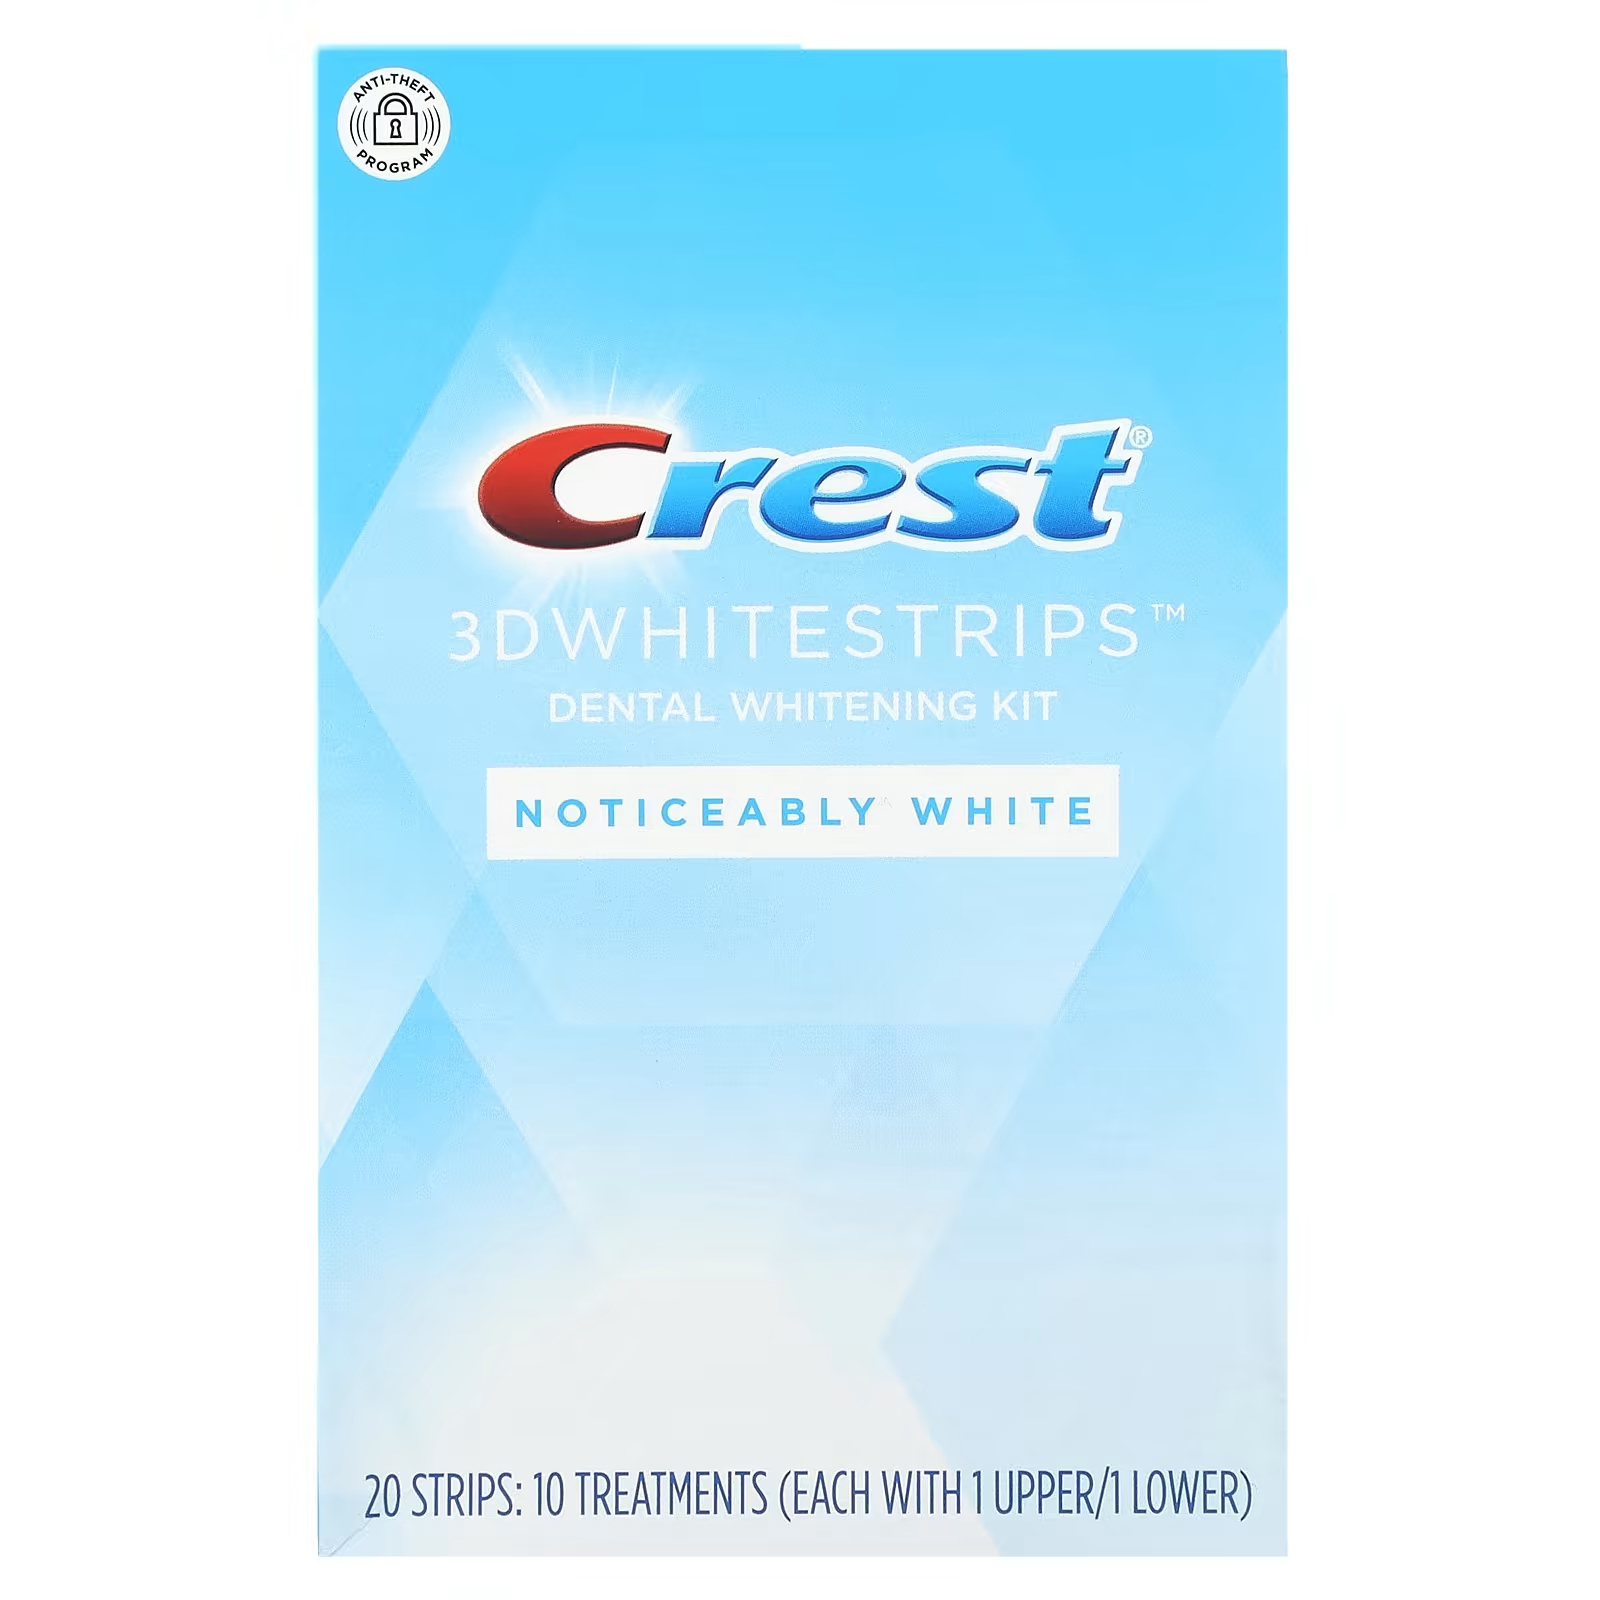 Набор для отбеливания зубов Crest 3D Whitestrips заметный белый цвет, 20 шт.